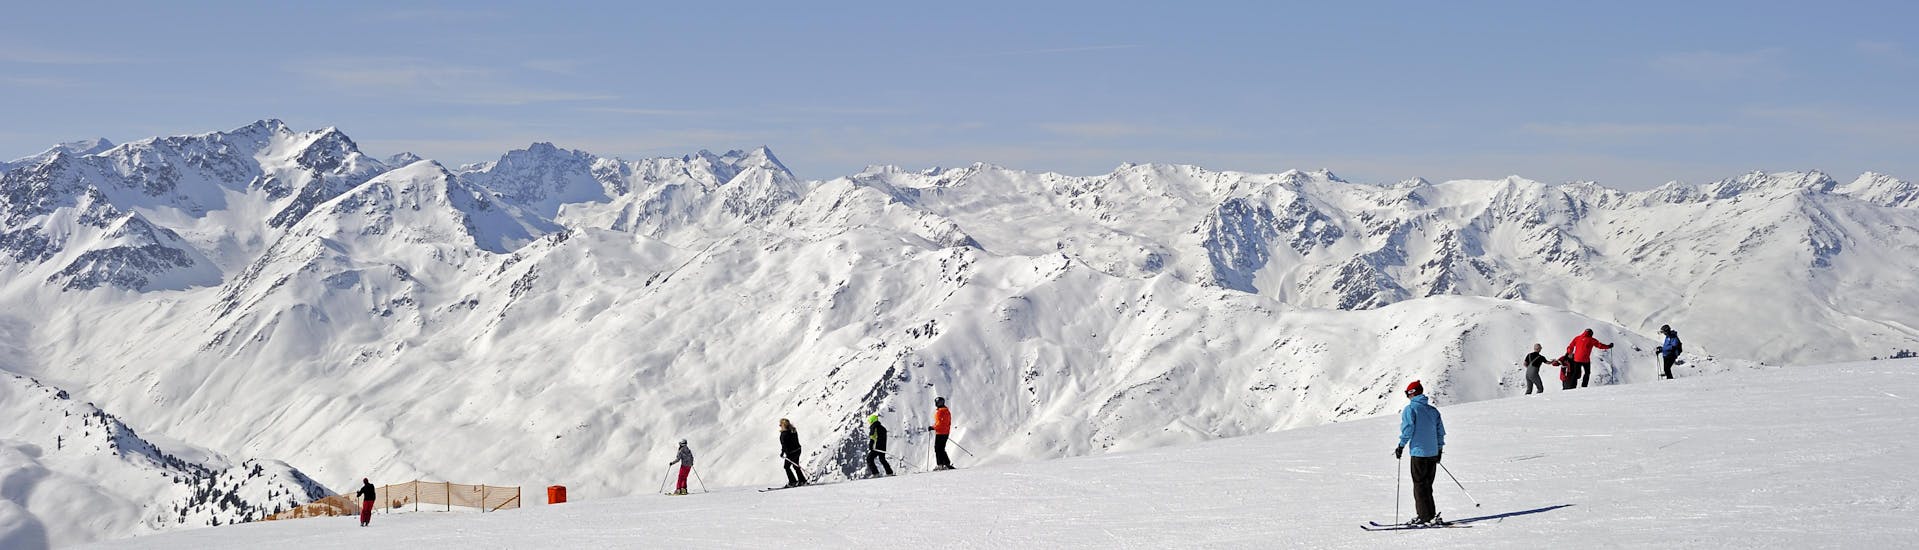 Adultes et enfants skiant dans la station de ski de Axamer Lizum.